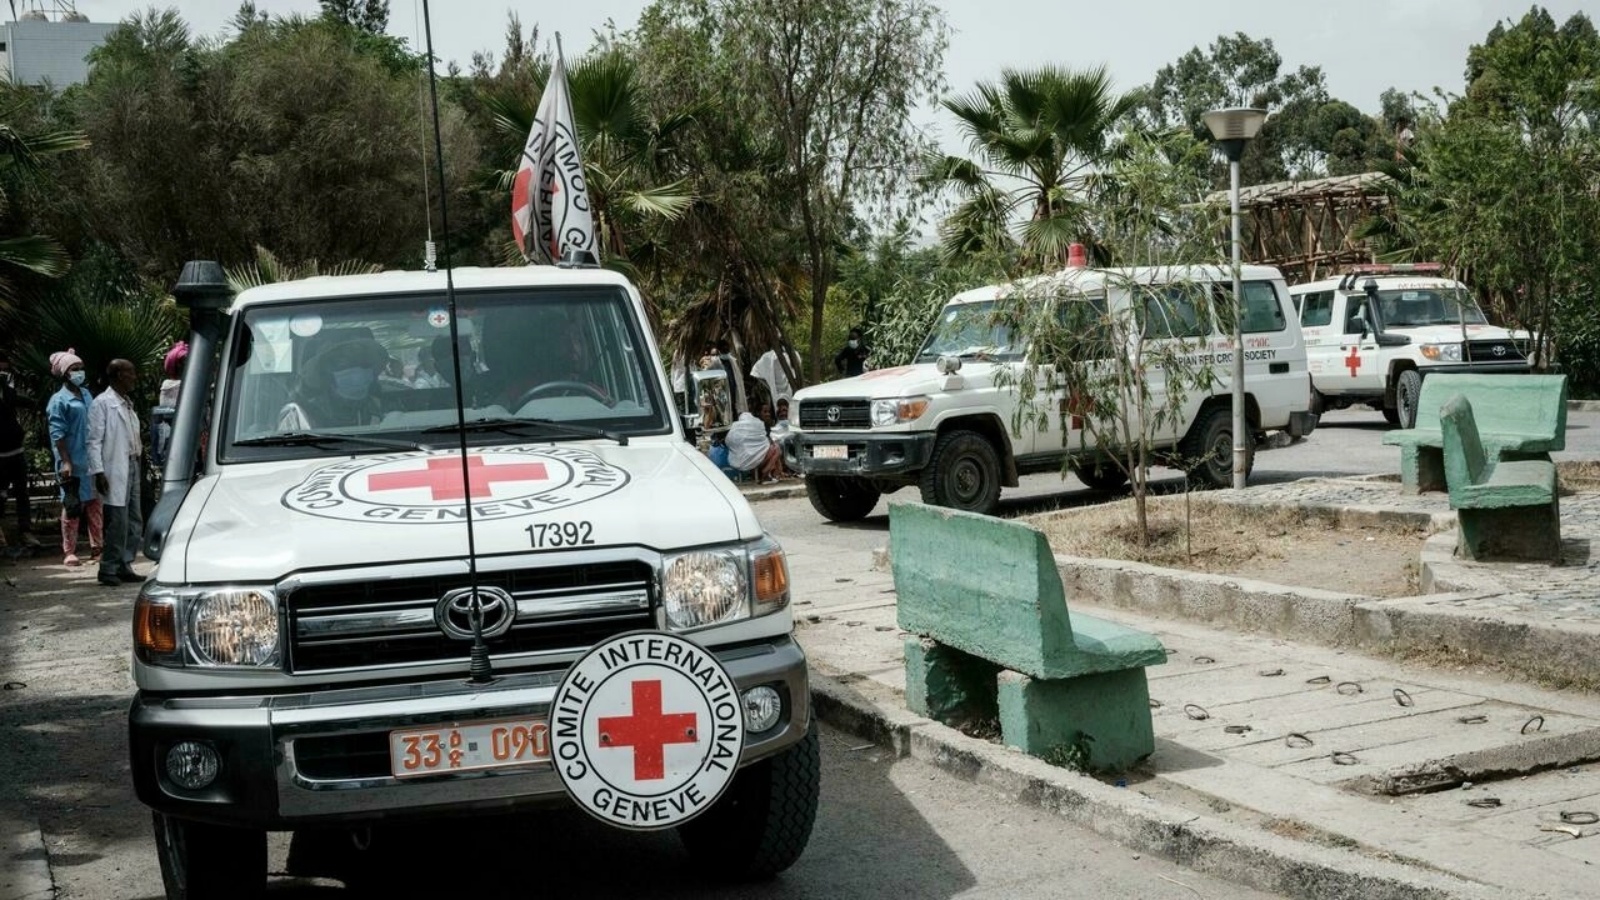 سيارات إسعاف تابعة للجنلة الدولية للصليب الأحمر في 24 يونيو 2021 في مستشفى ميكيلي الرئيسي عاصمة منطقة تيغراي في إثيوبيا